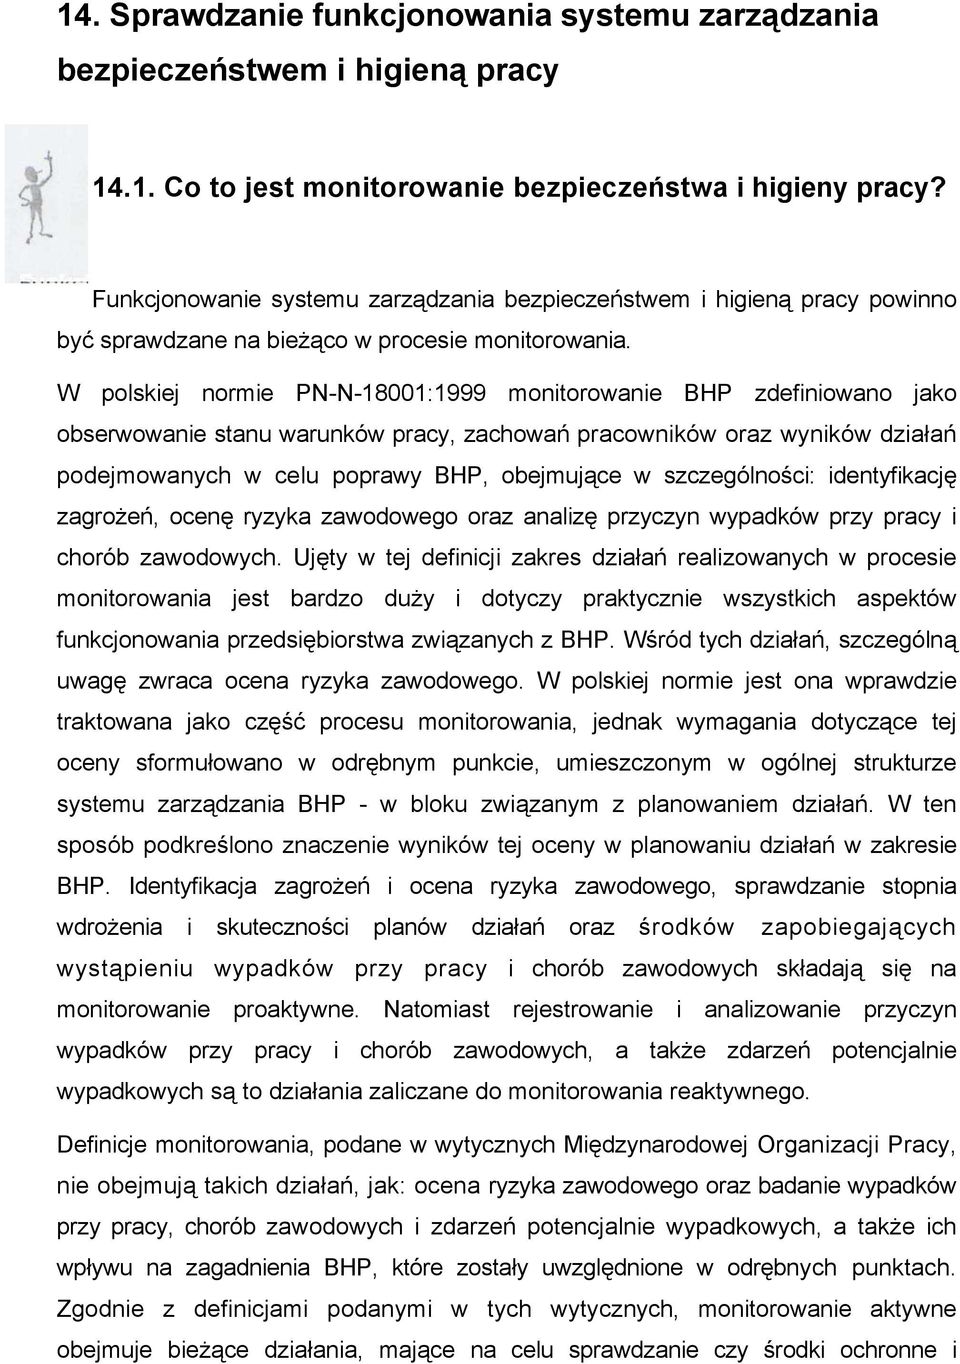 W polskiej normie PN-N-18001:1999 monitorowanie BHP zdefiniowano jako obserwowanie stanu warunków pracy, zachowań pracowników oraz wyników działań podejmowanych w celu poprawy BHP, obejmujące w